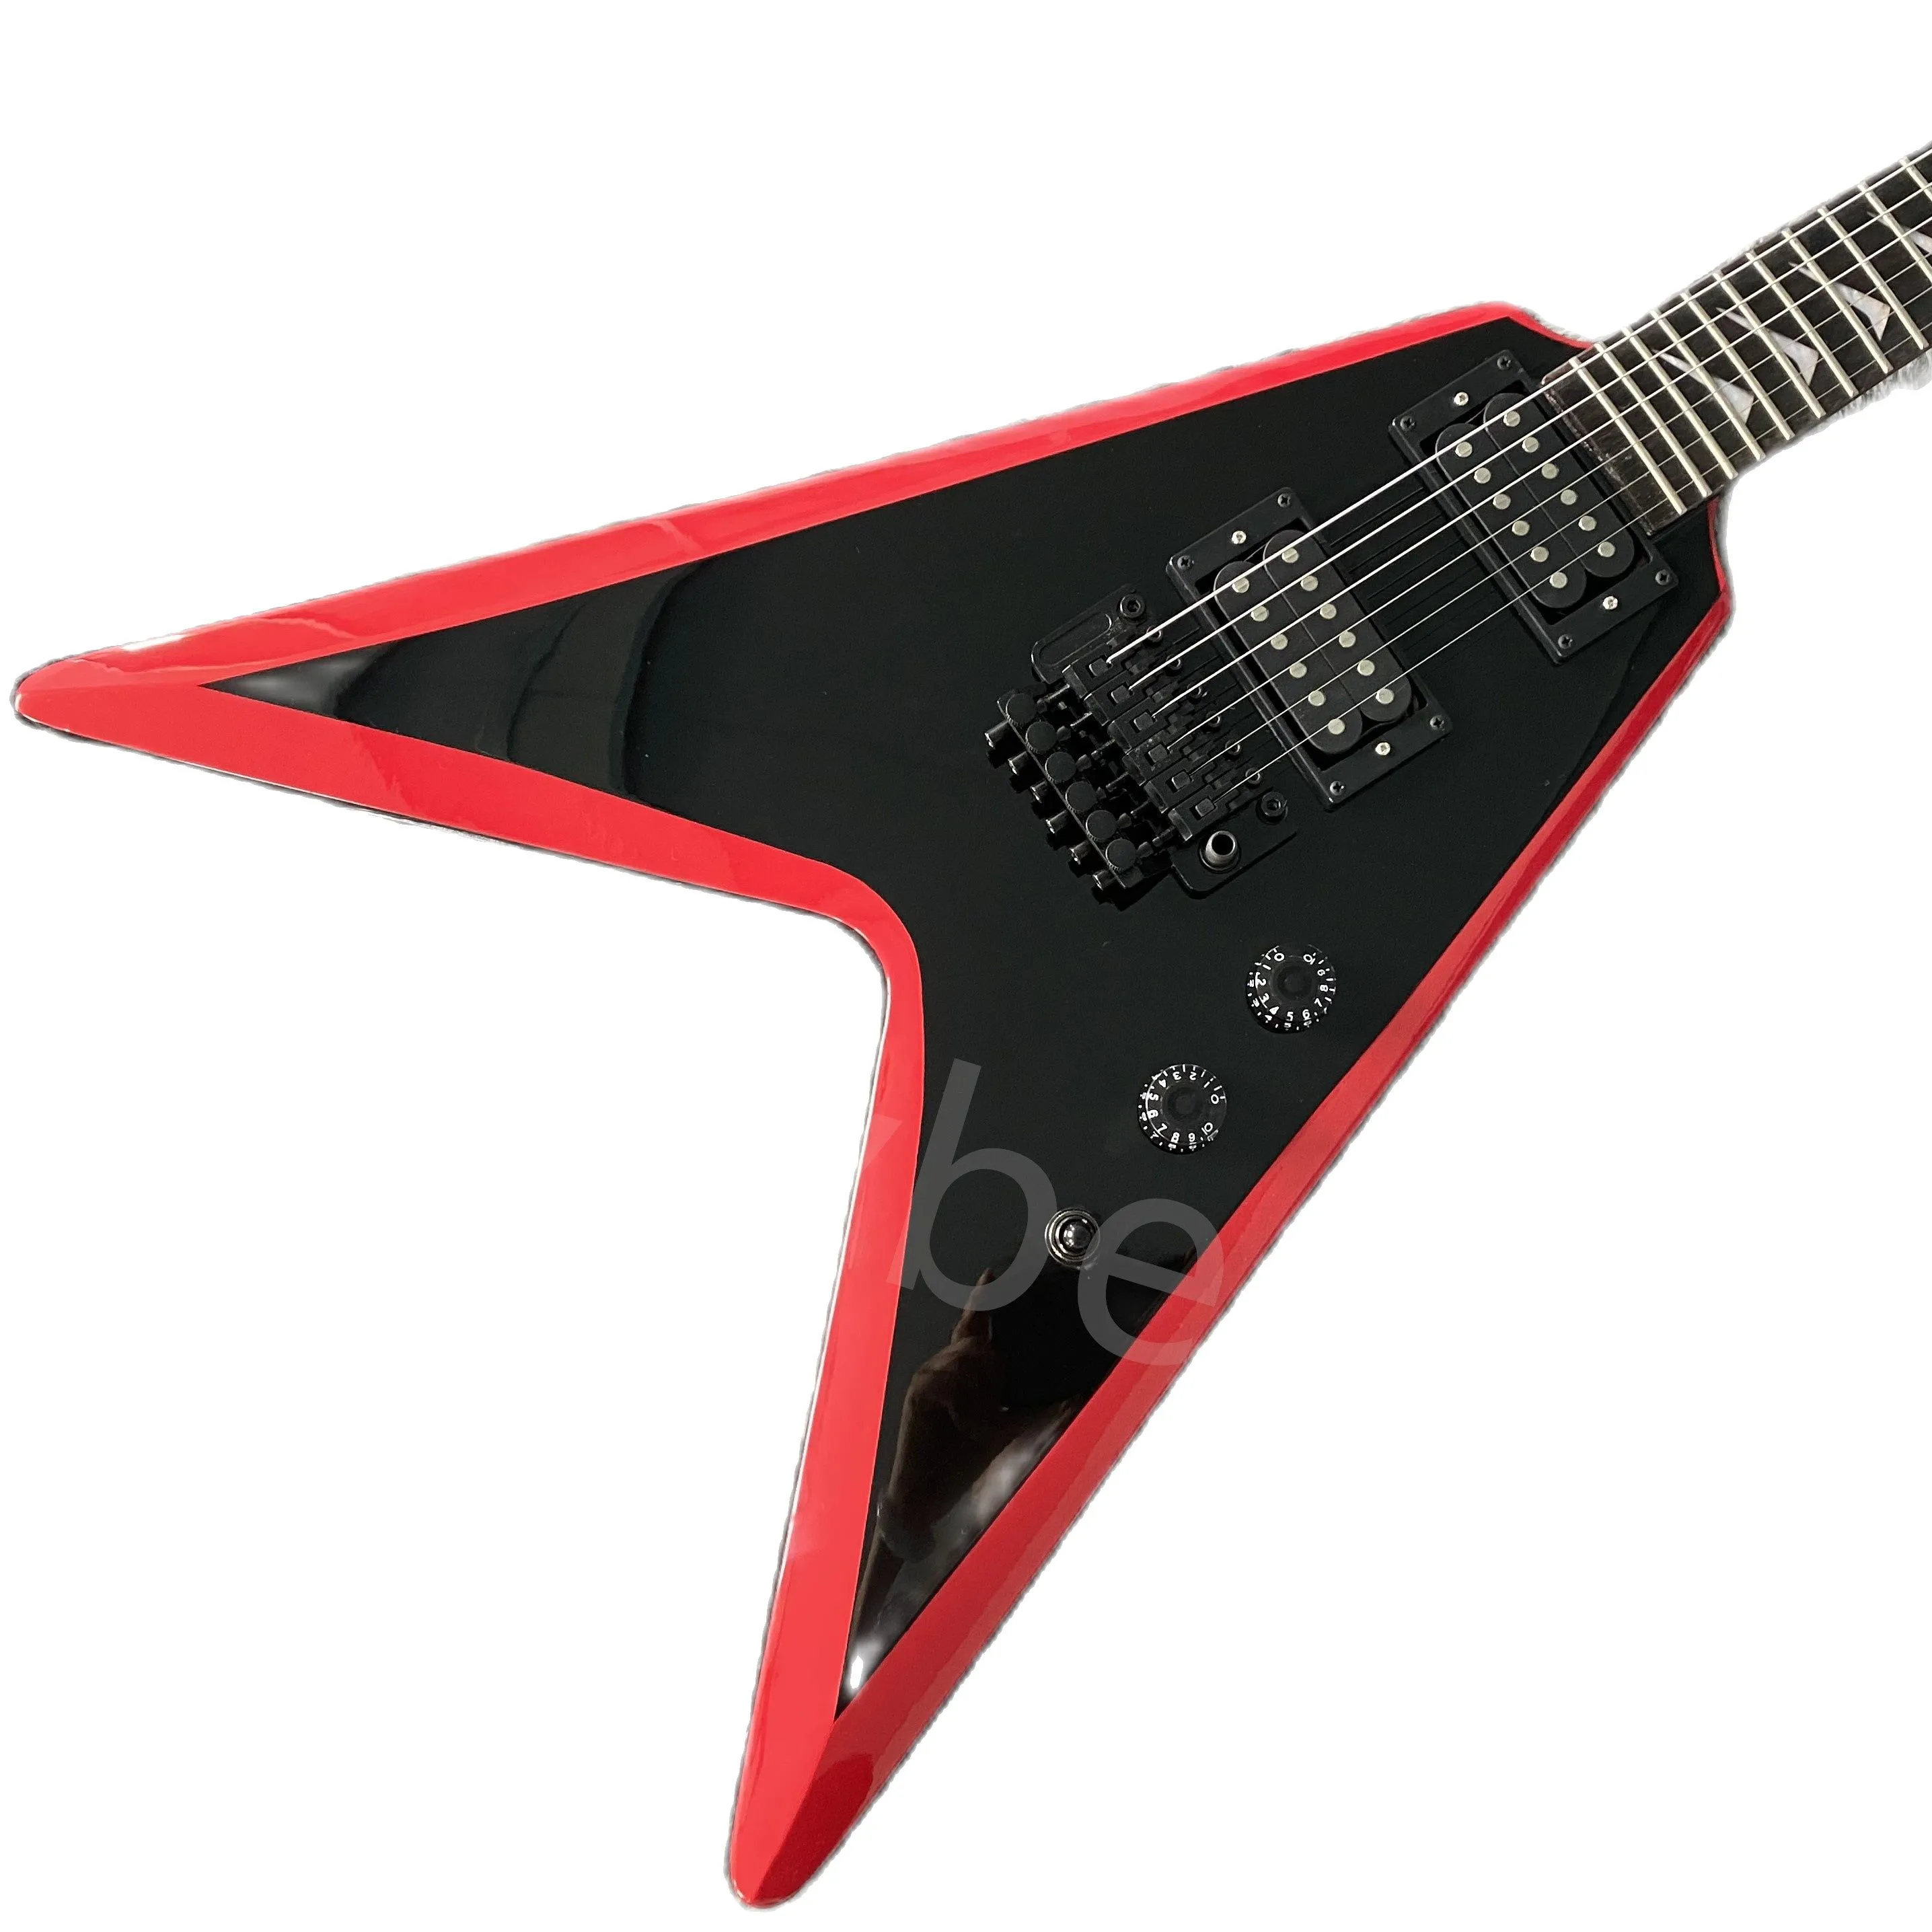 Article de guitare électrique Lvybest chine noir et rouge la vente directe d'usine en forme d'avion peut être personnalisée